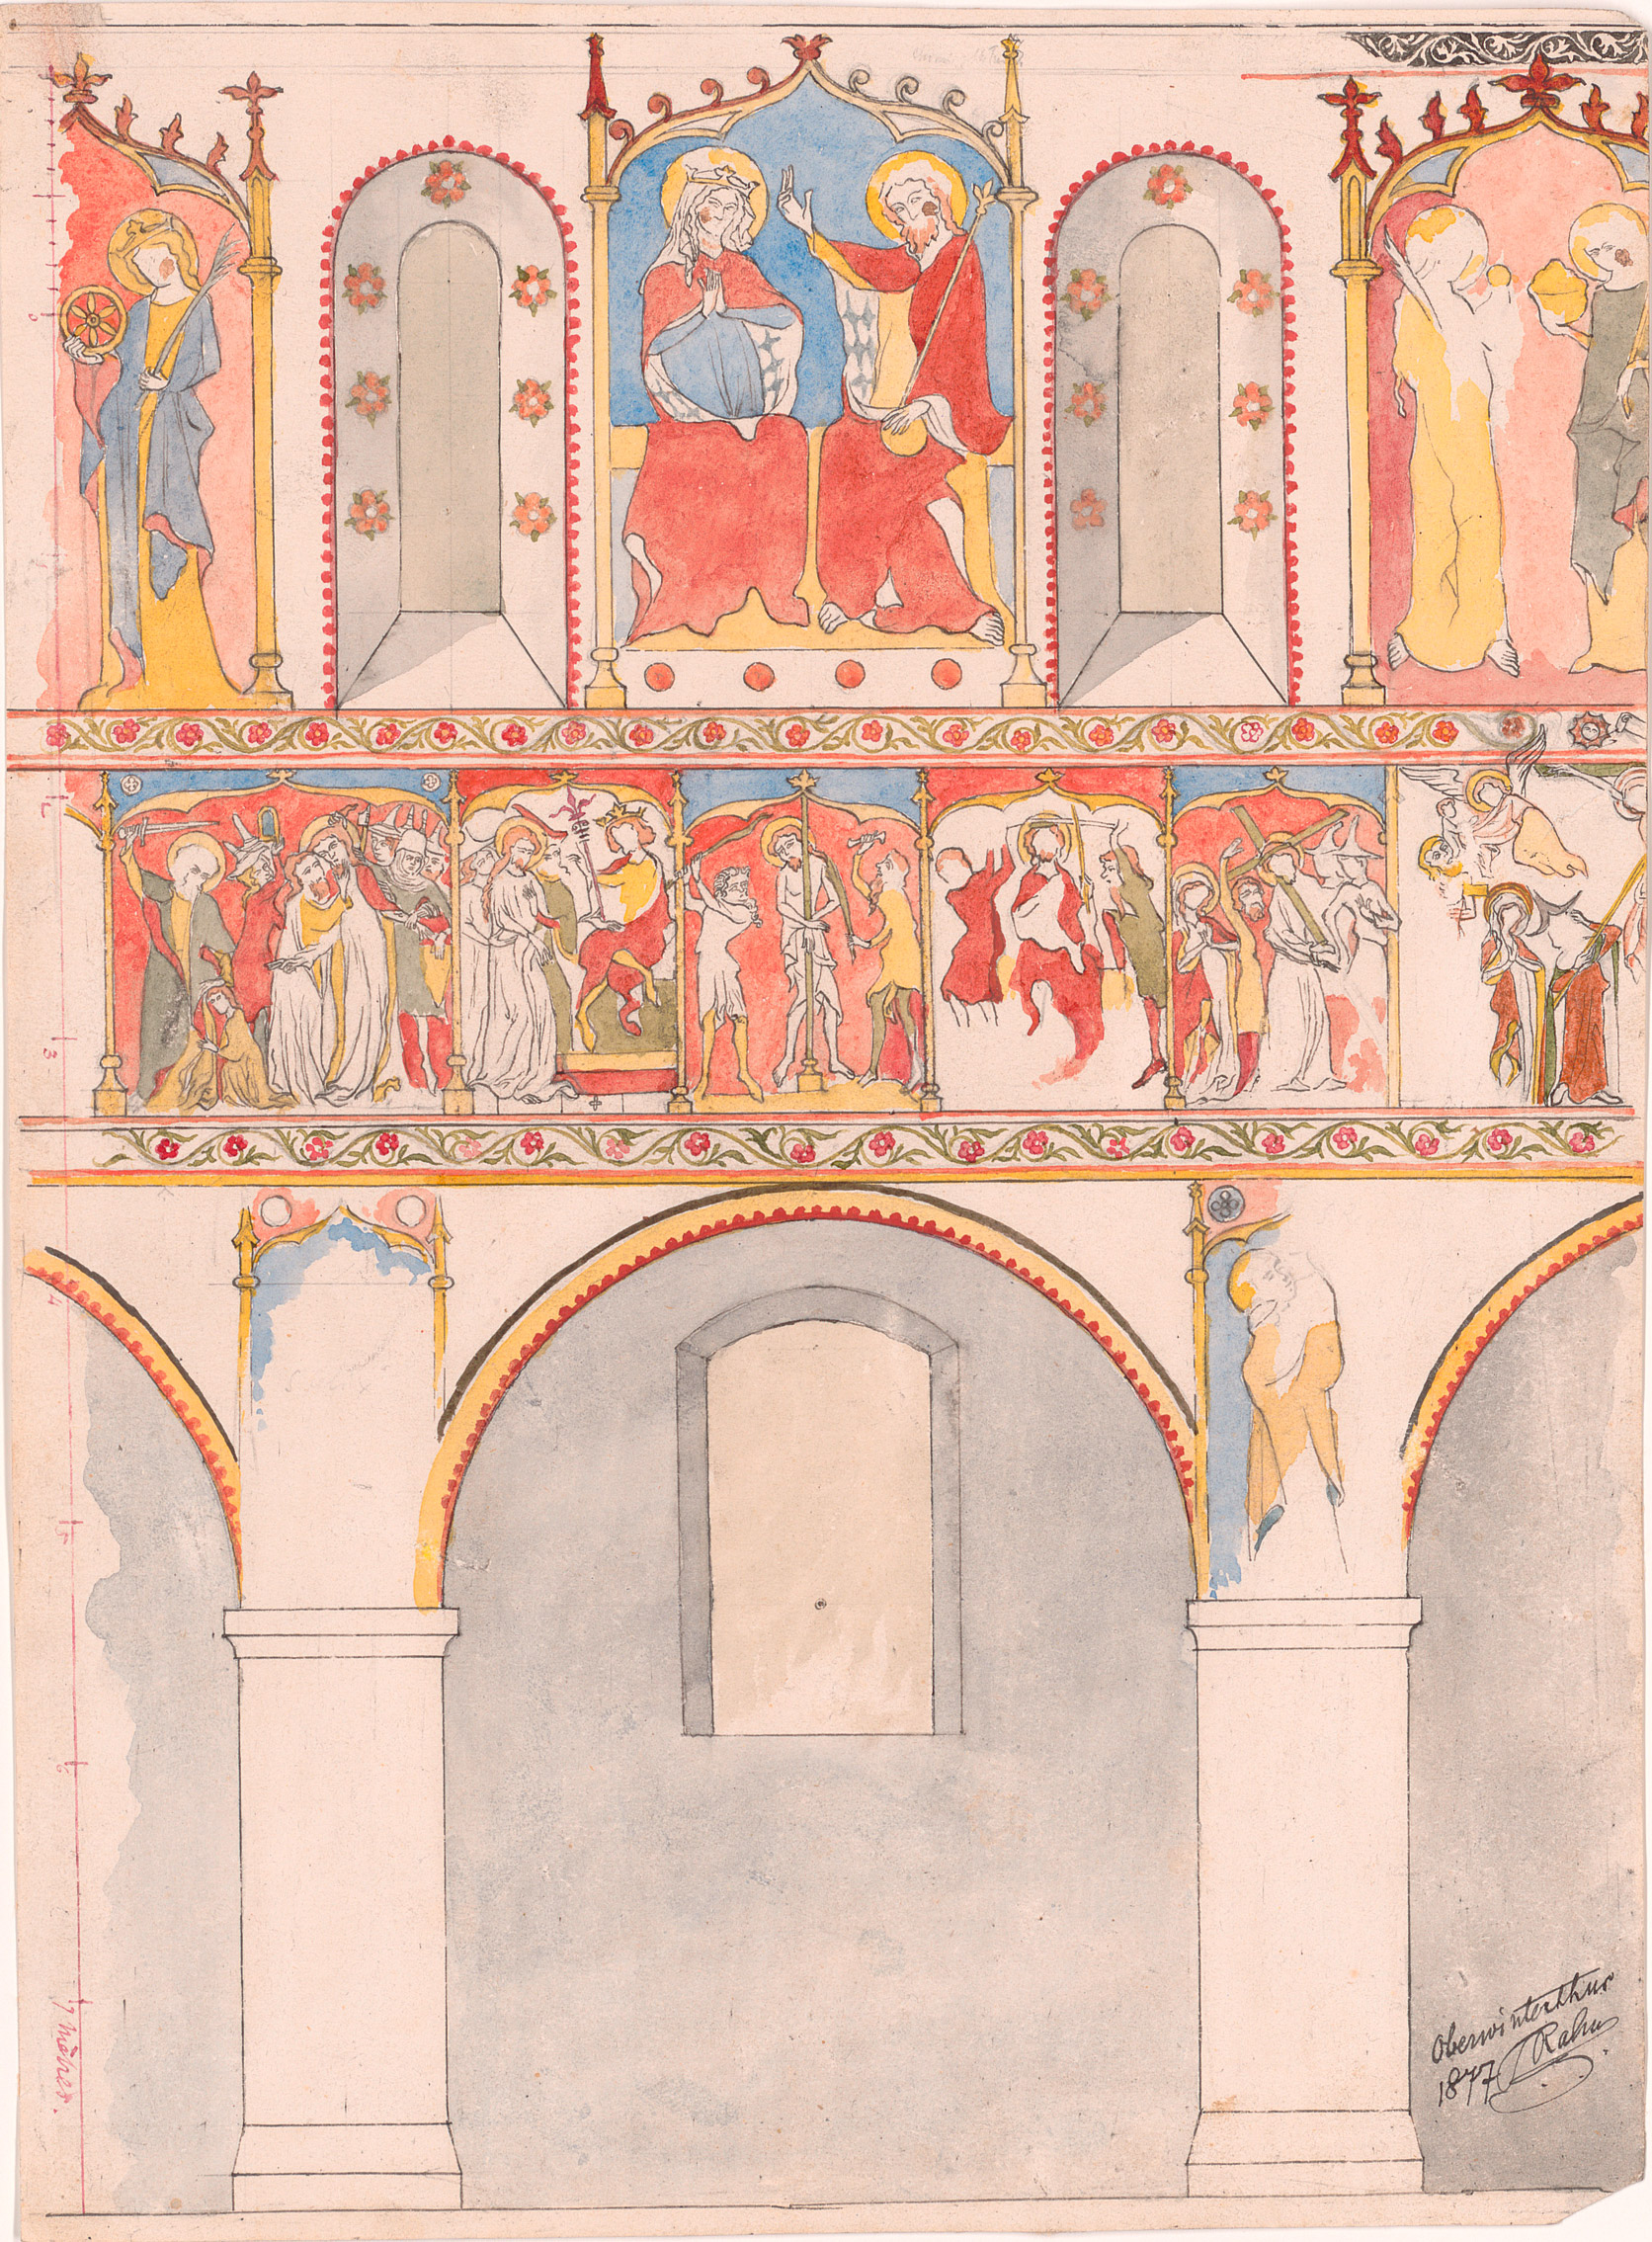 Johann Rudolf Rahn, Fresken an der Südwand in St. Arbogast in Oberwinterthur, 1877, Feder, aquarelliert, Zentralbibliothek Zürich, Graphische Sammlung und Fotoarchiv